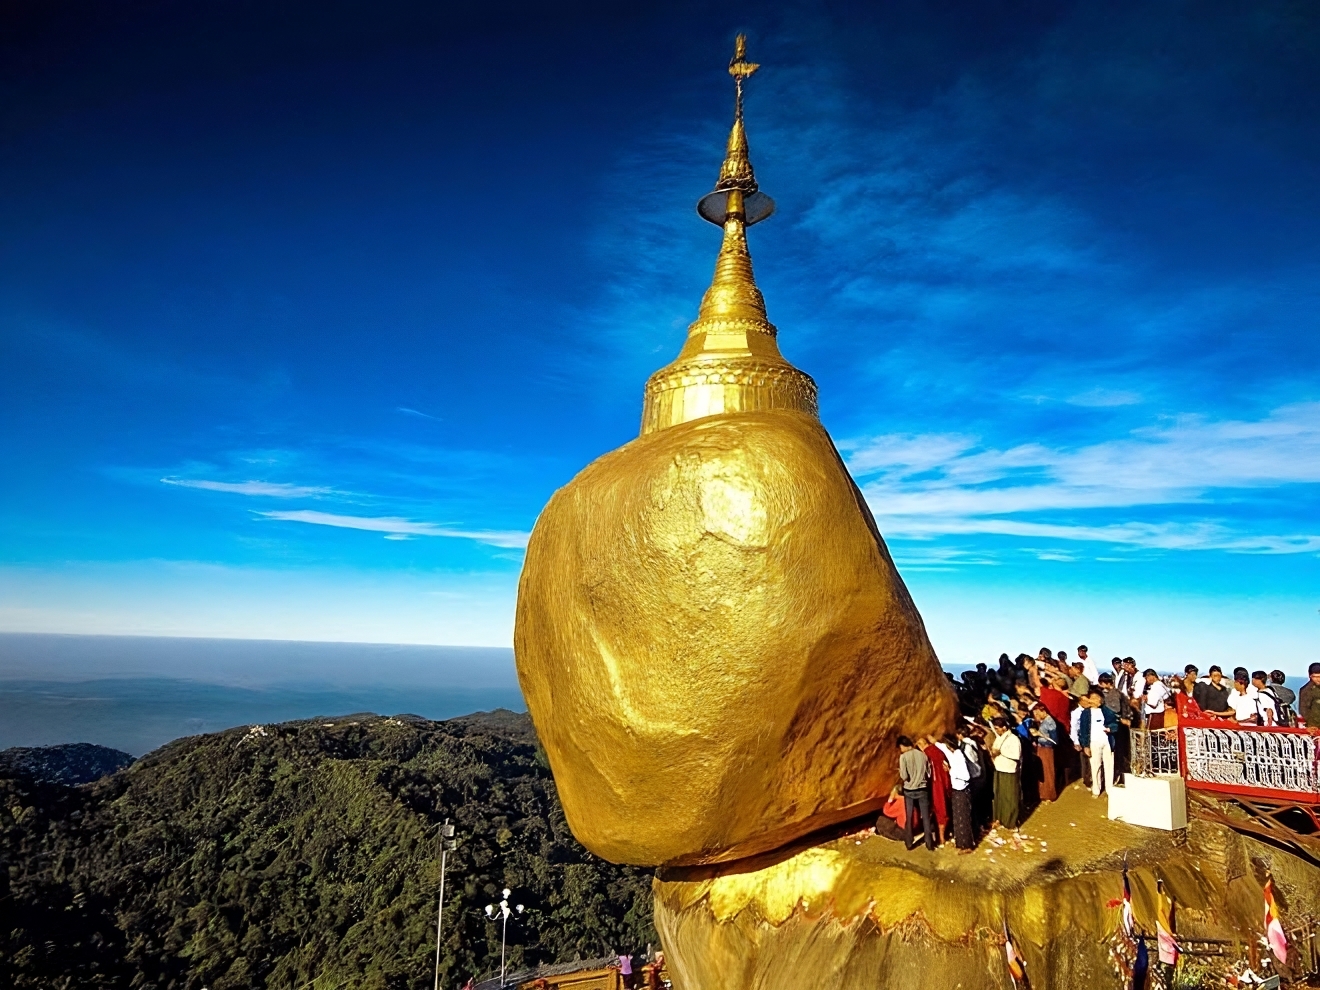 khám phá, điểm du lịch, bí ẩn về hòn đá thiêng nghiêng mãi không đổ ở myanmar: một sợi tóc đức phật đỡ hòn đá 600 tấn